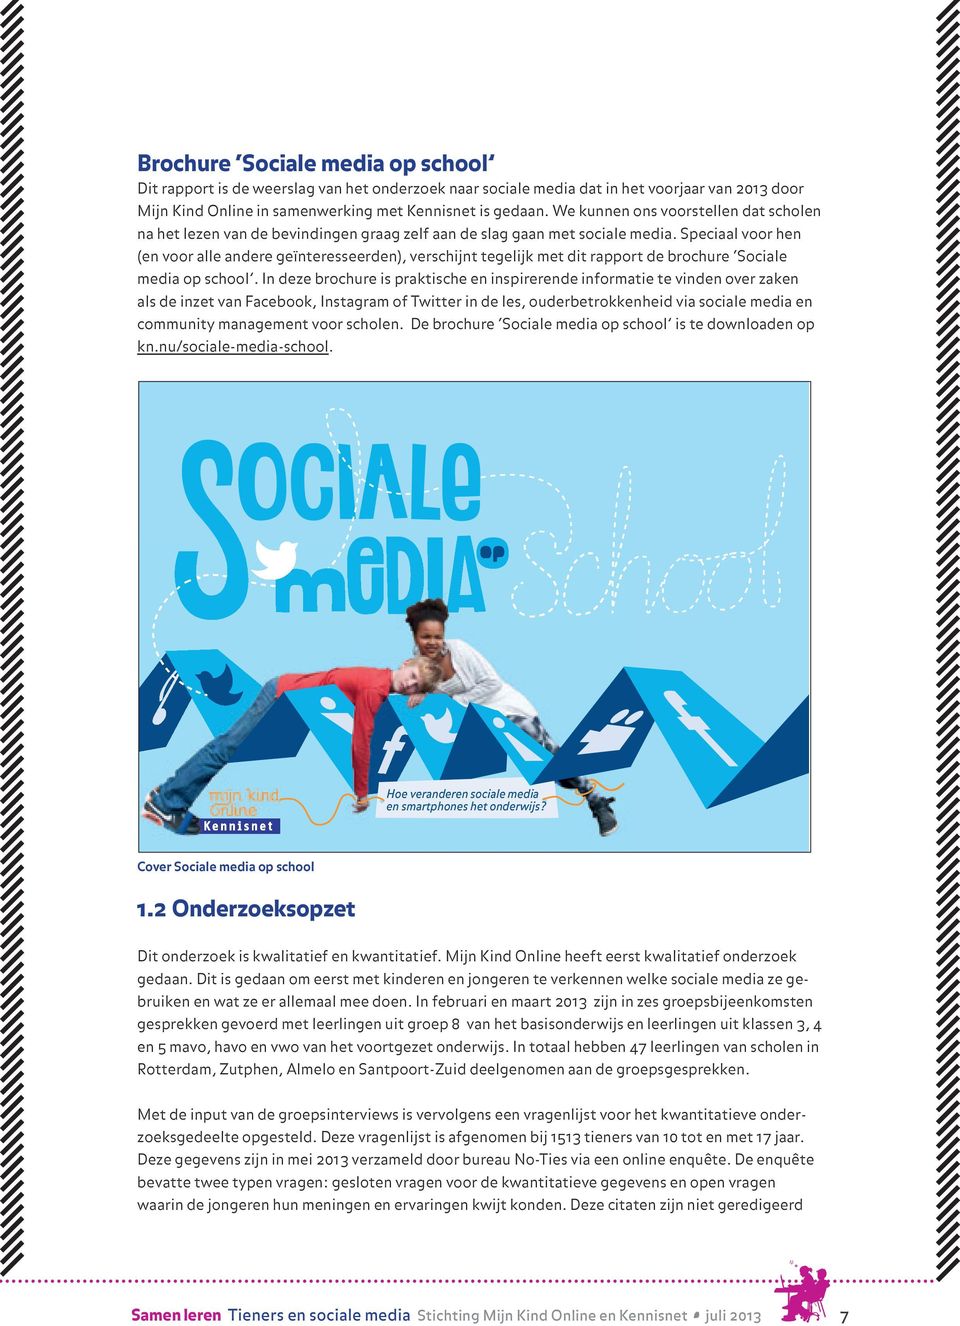 Speciaal voor hen (en voor alle andere geïnteresseerden), verschijnt tegelijk met dit rapport de brochure Sociale media op school.